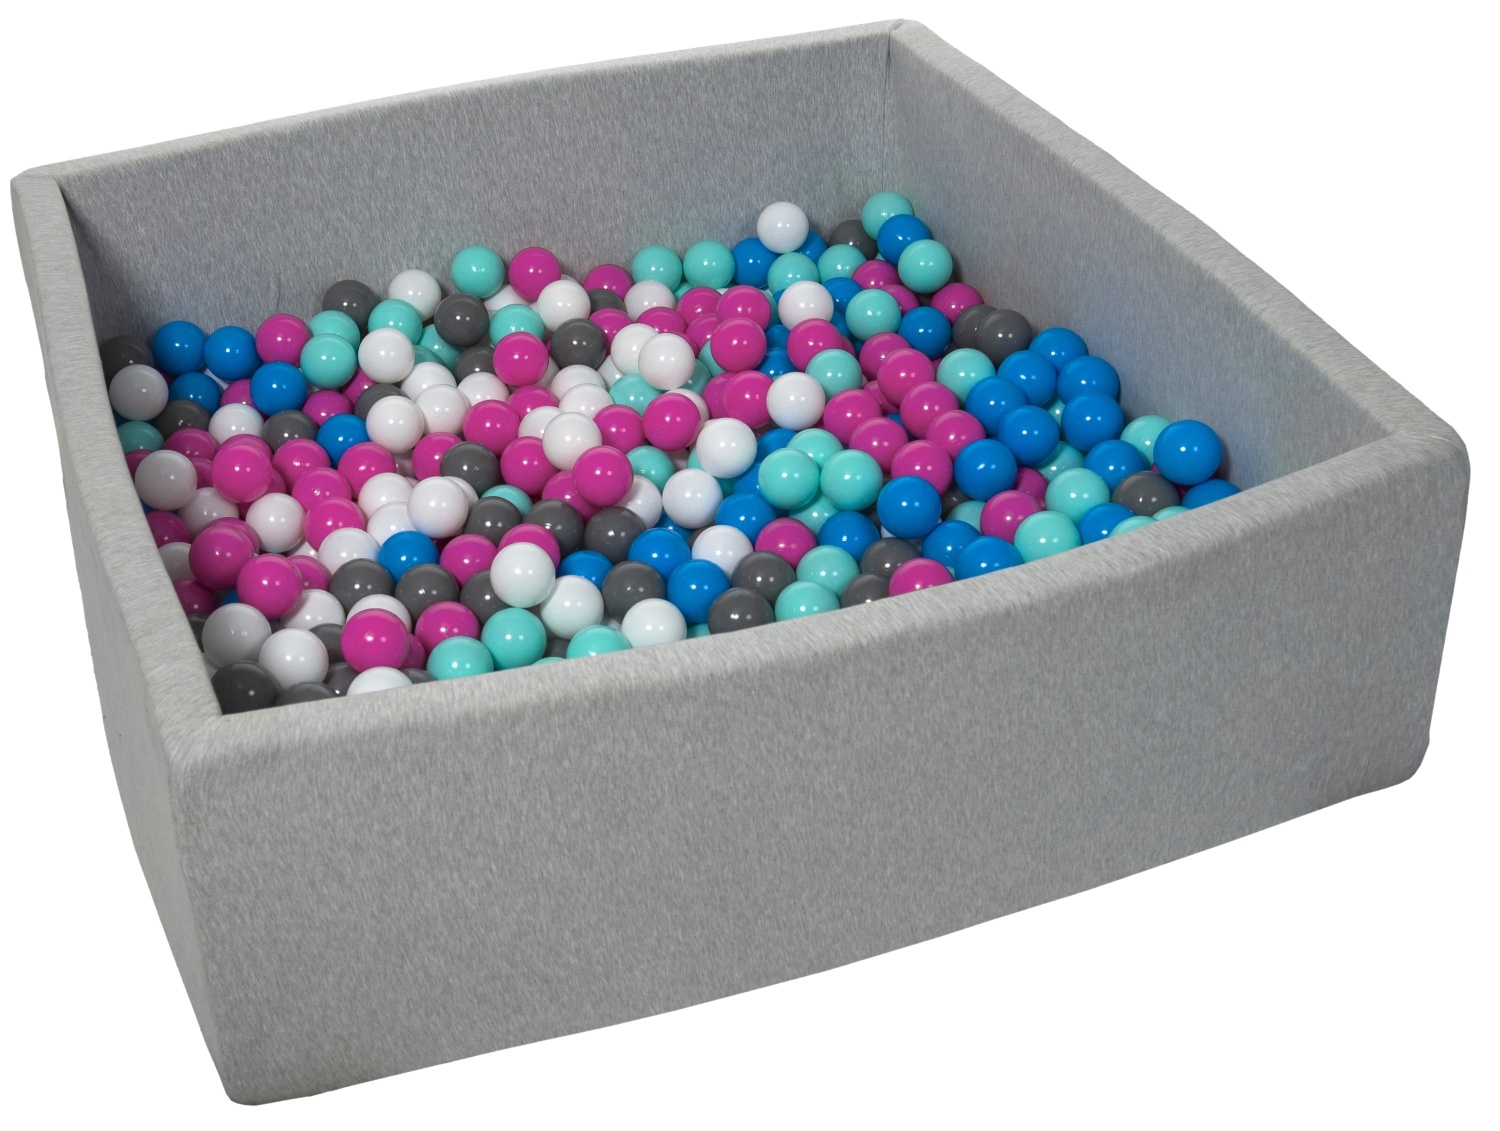 Ballons de vinyle colorés pour la piscine